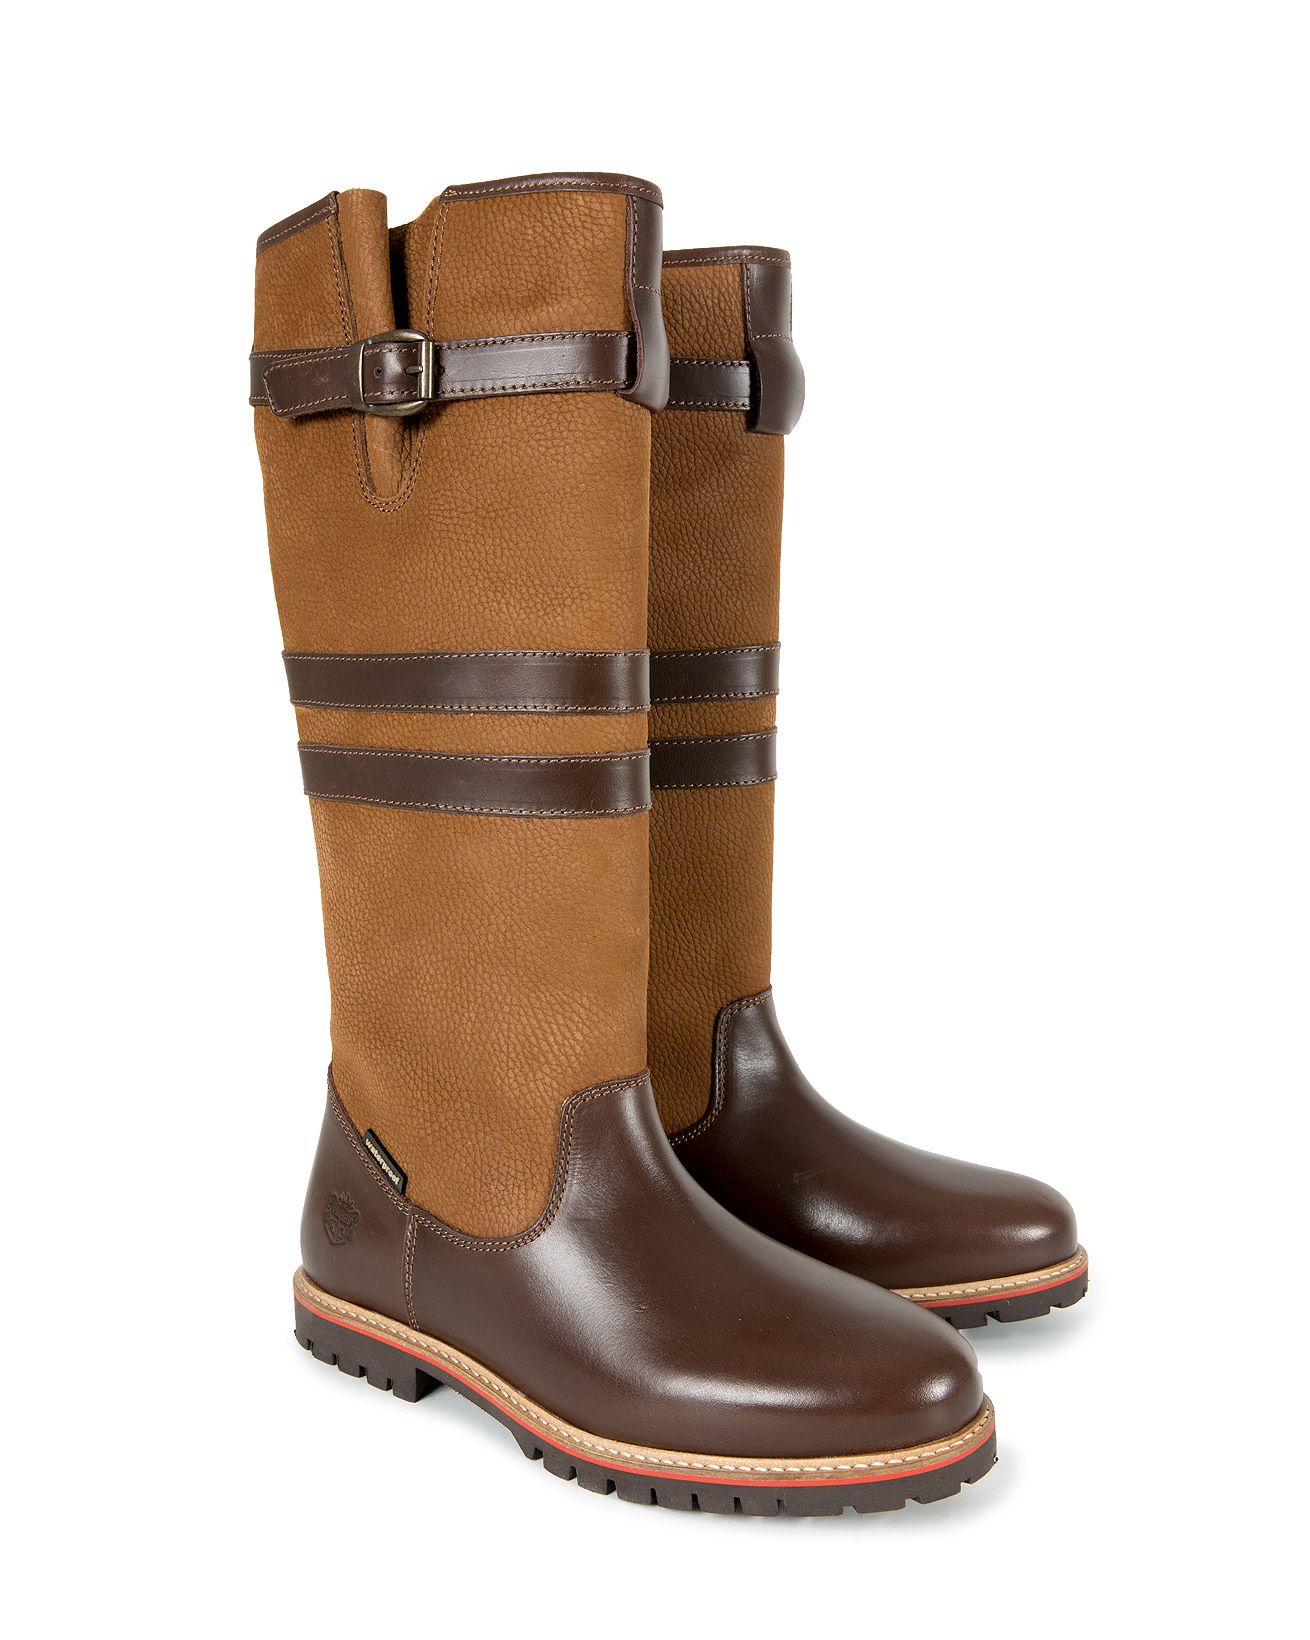 7526-waterproof boot -knee-pair.jpg